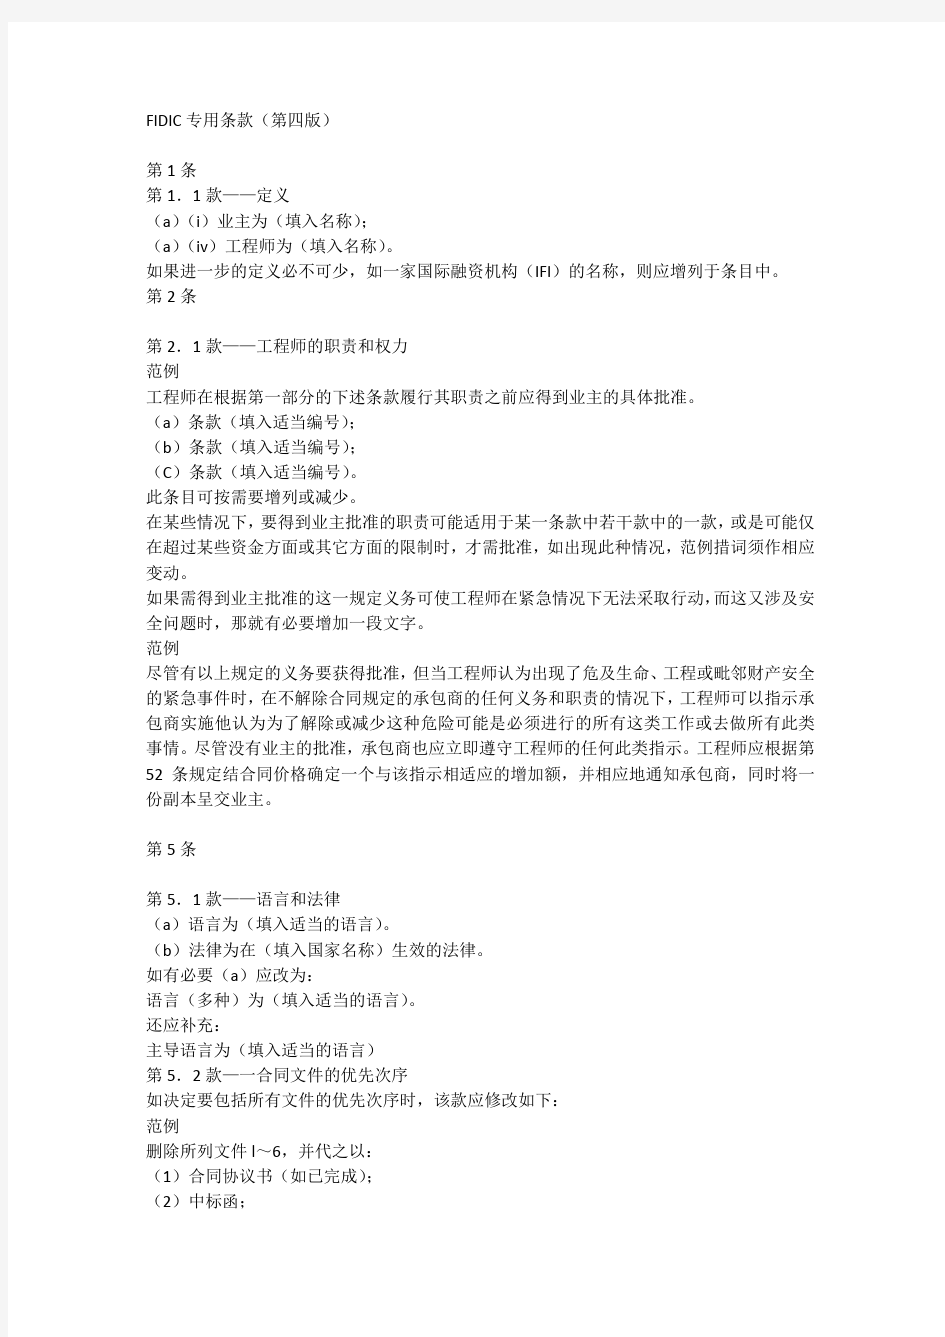 FIDIC专用条款 中文第四版